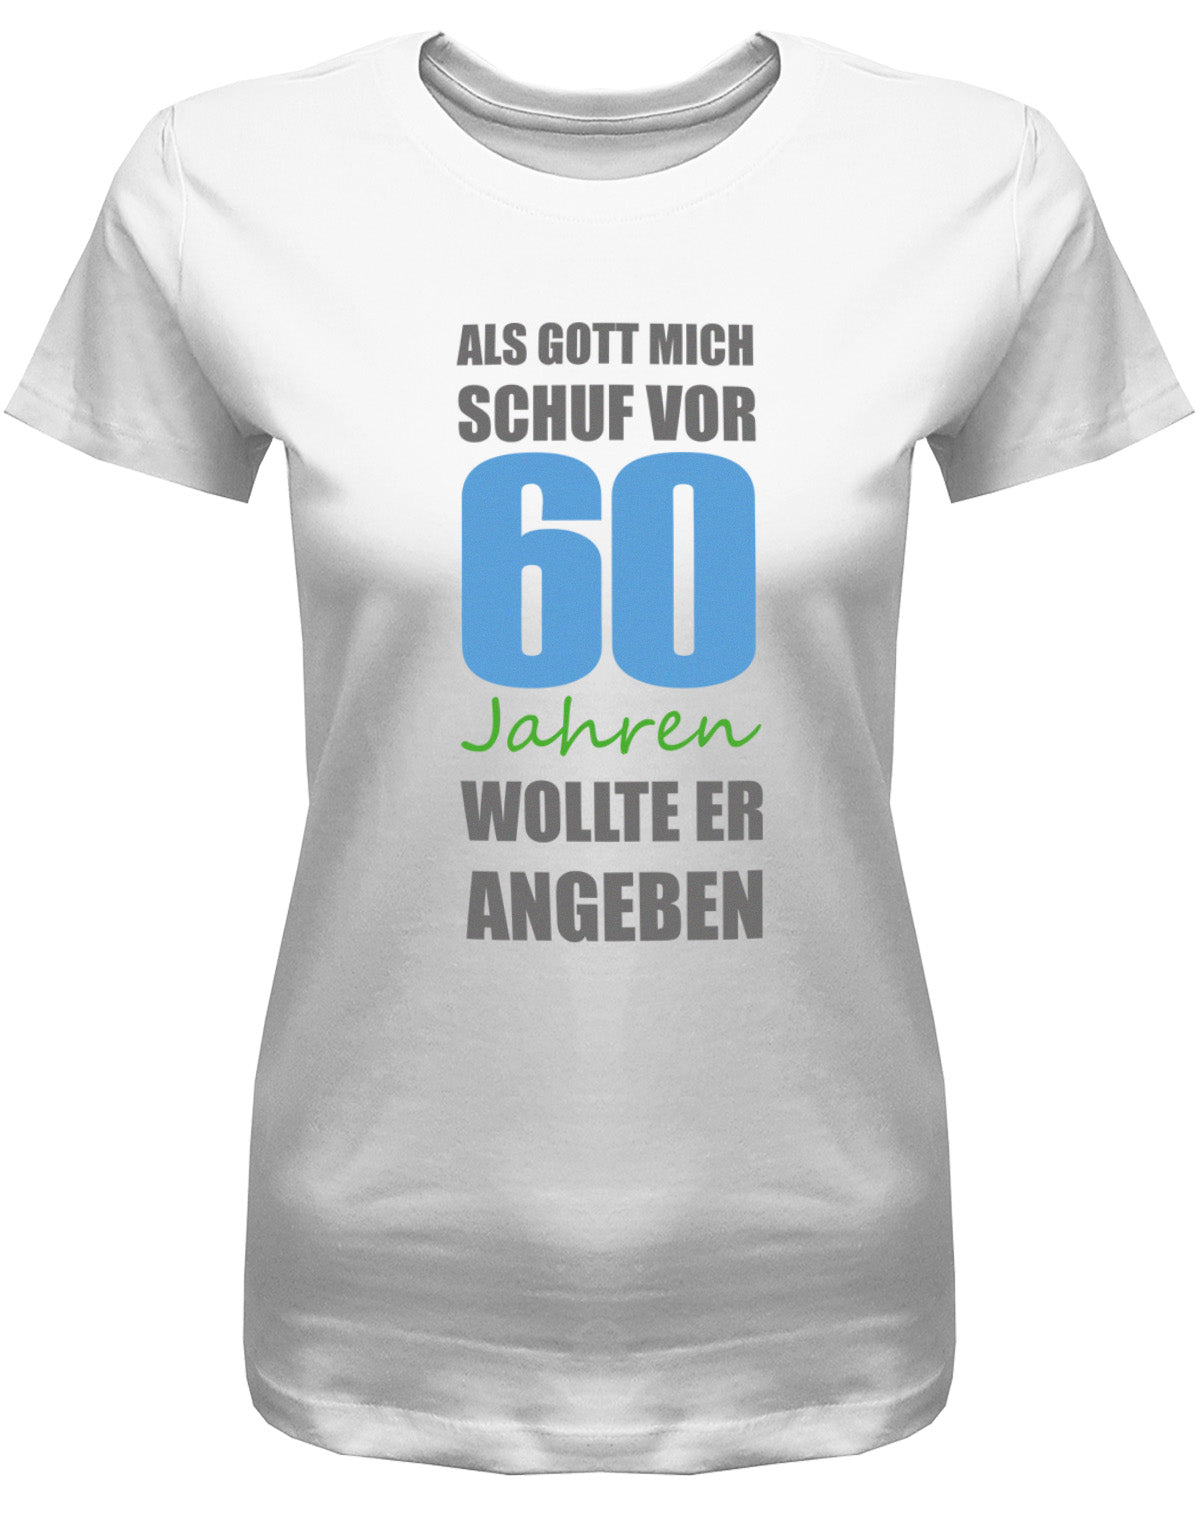 Lustiges T-Shirt zum 60 Geburtstag für die Frau Bedruckt mit Als Gott mich schuf vor 60 Jahren wollte er angeben. Weiss